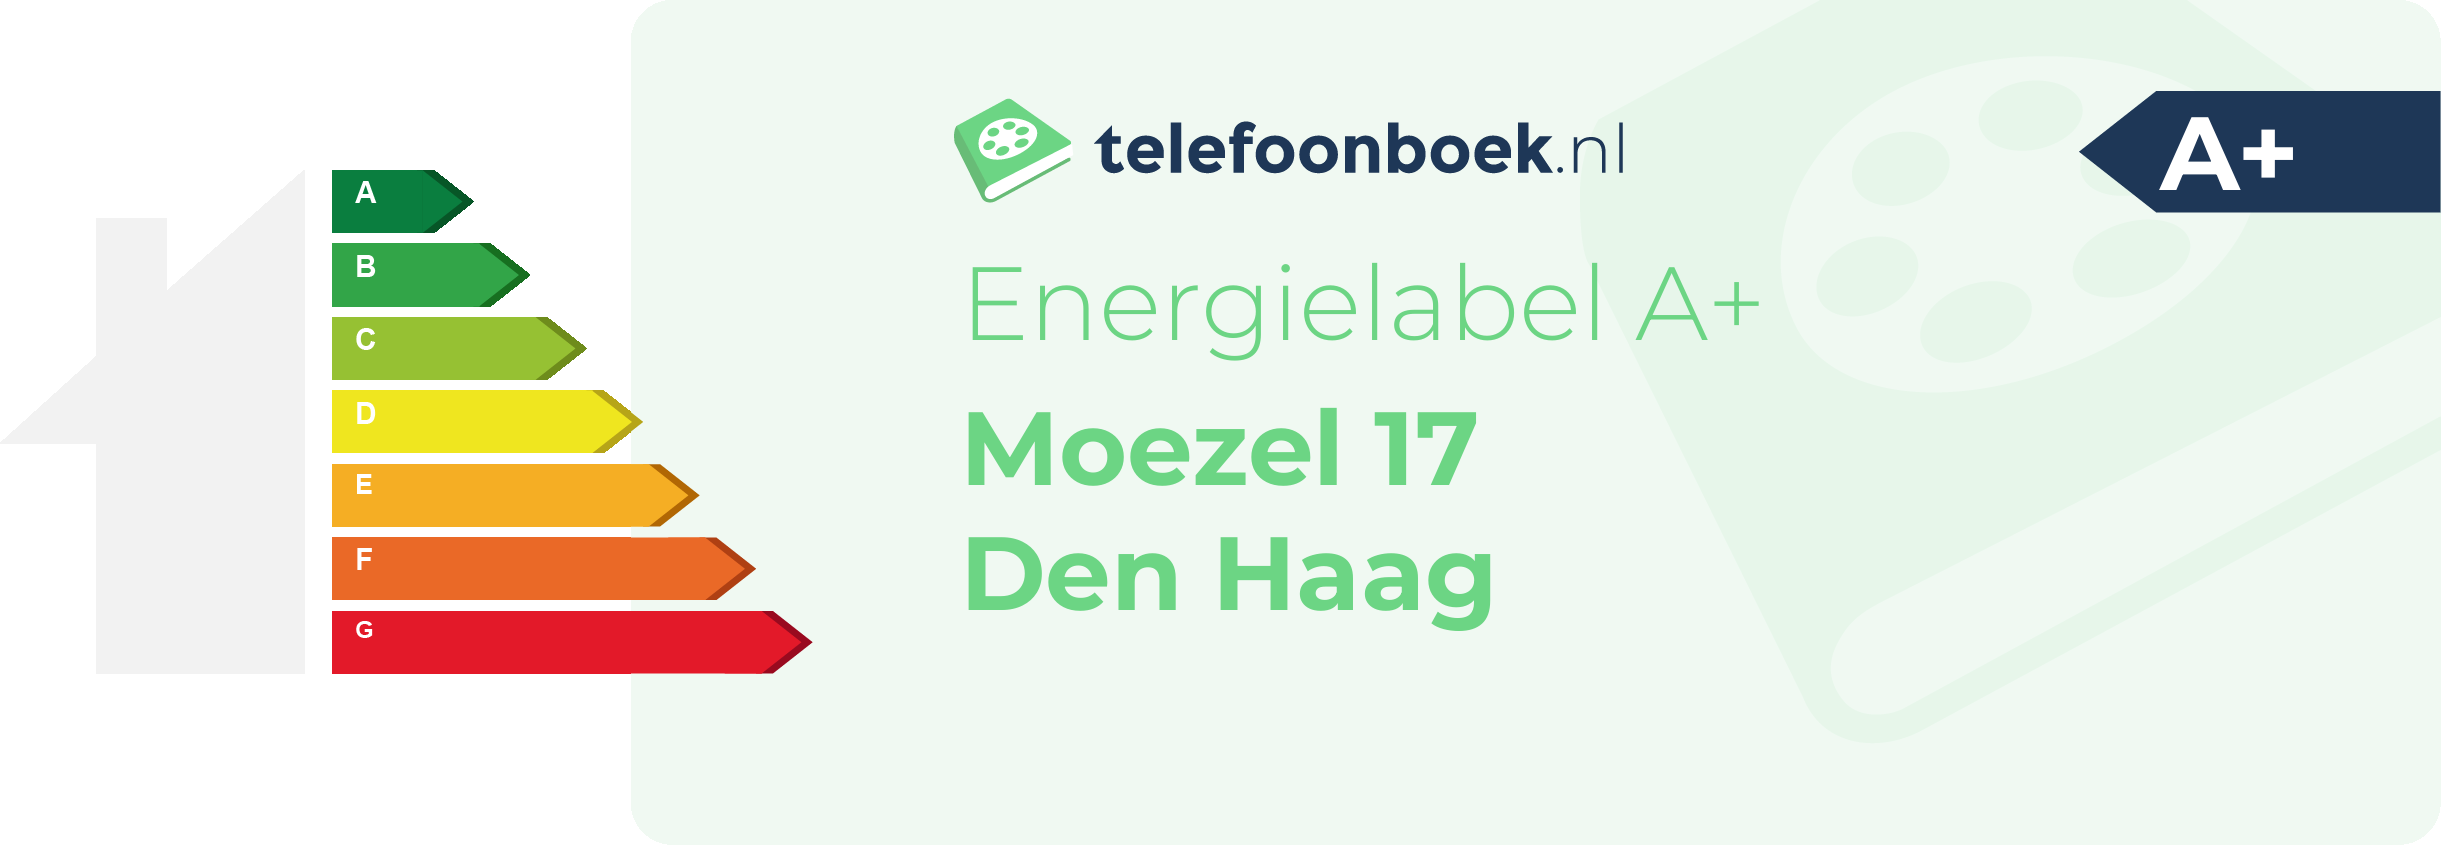 Energielabel Moezel 17 Den Haag